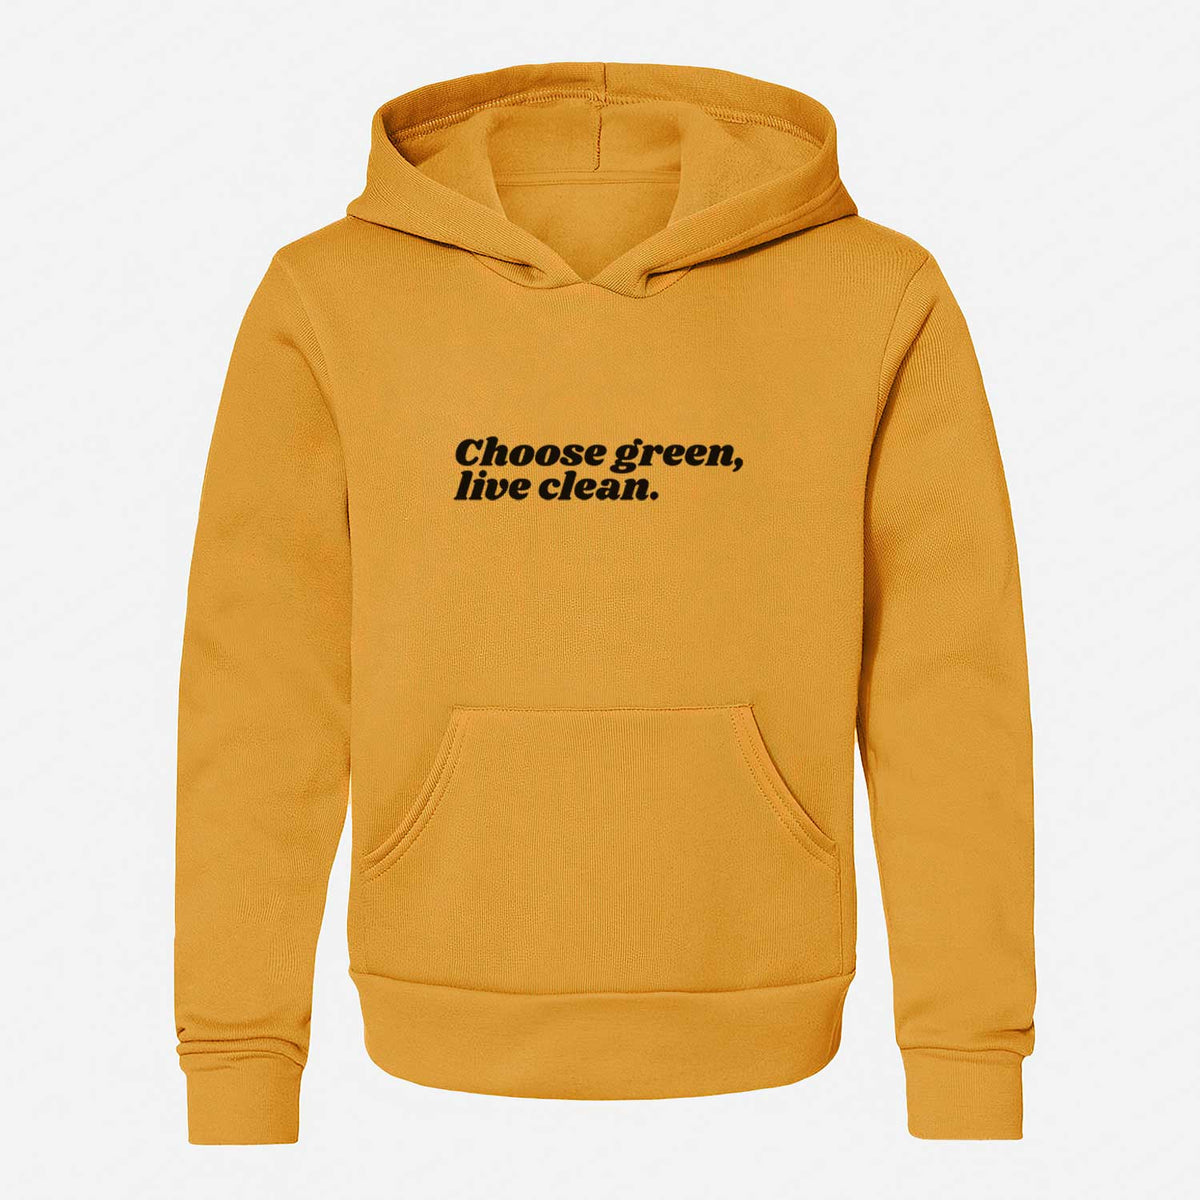 Choose Green, Live Clean - Youth Hoodie Sweatshirt